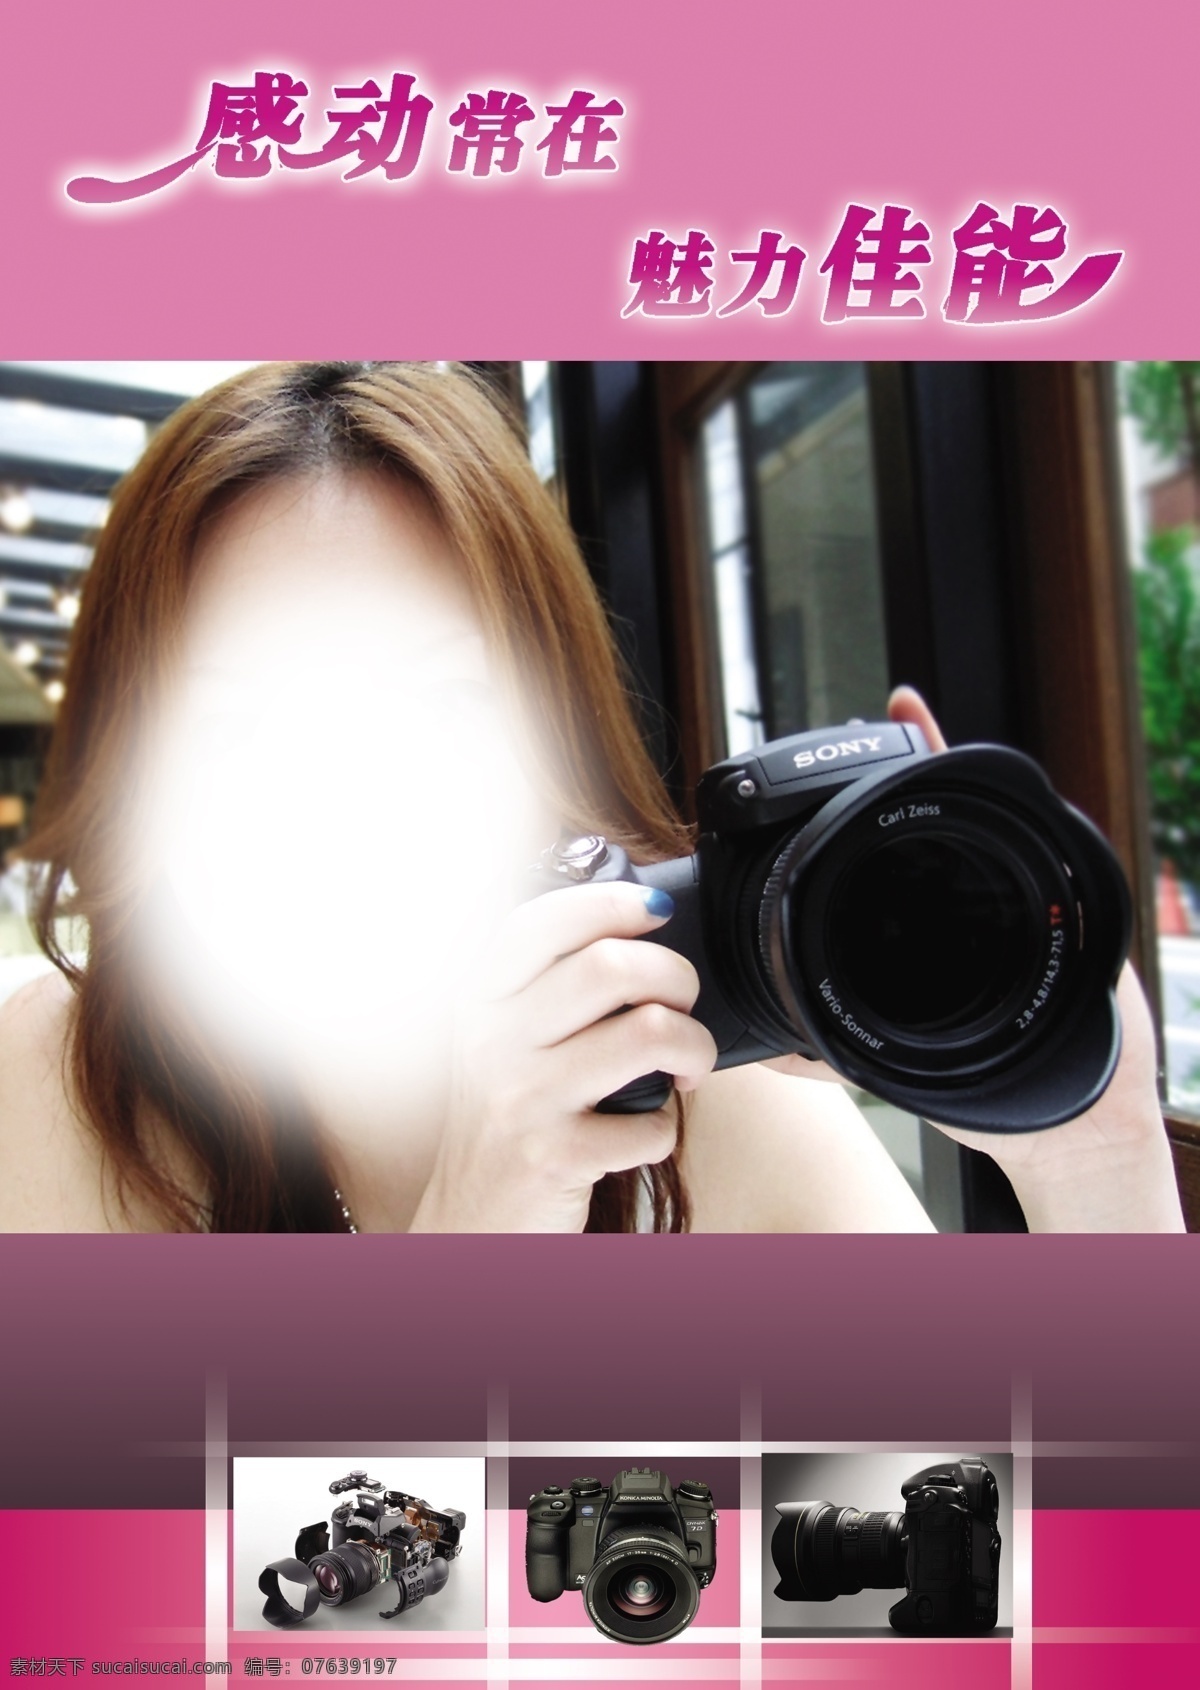 广告设计模板 佳能 美女 相机 源文件 相机素材下载 相机模板下载 相机部件 手 psd源文件